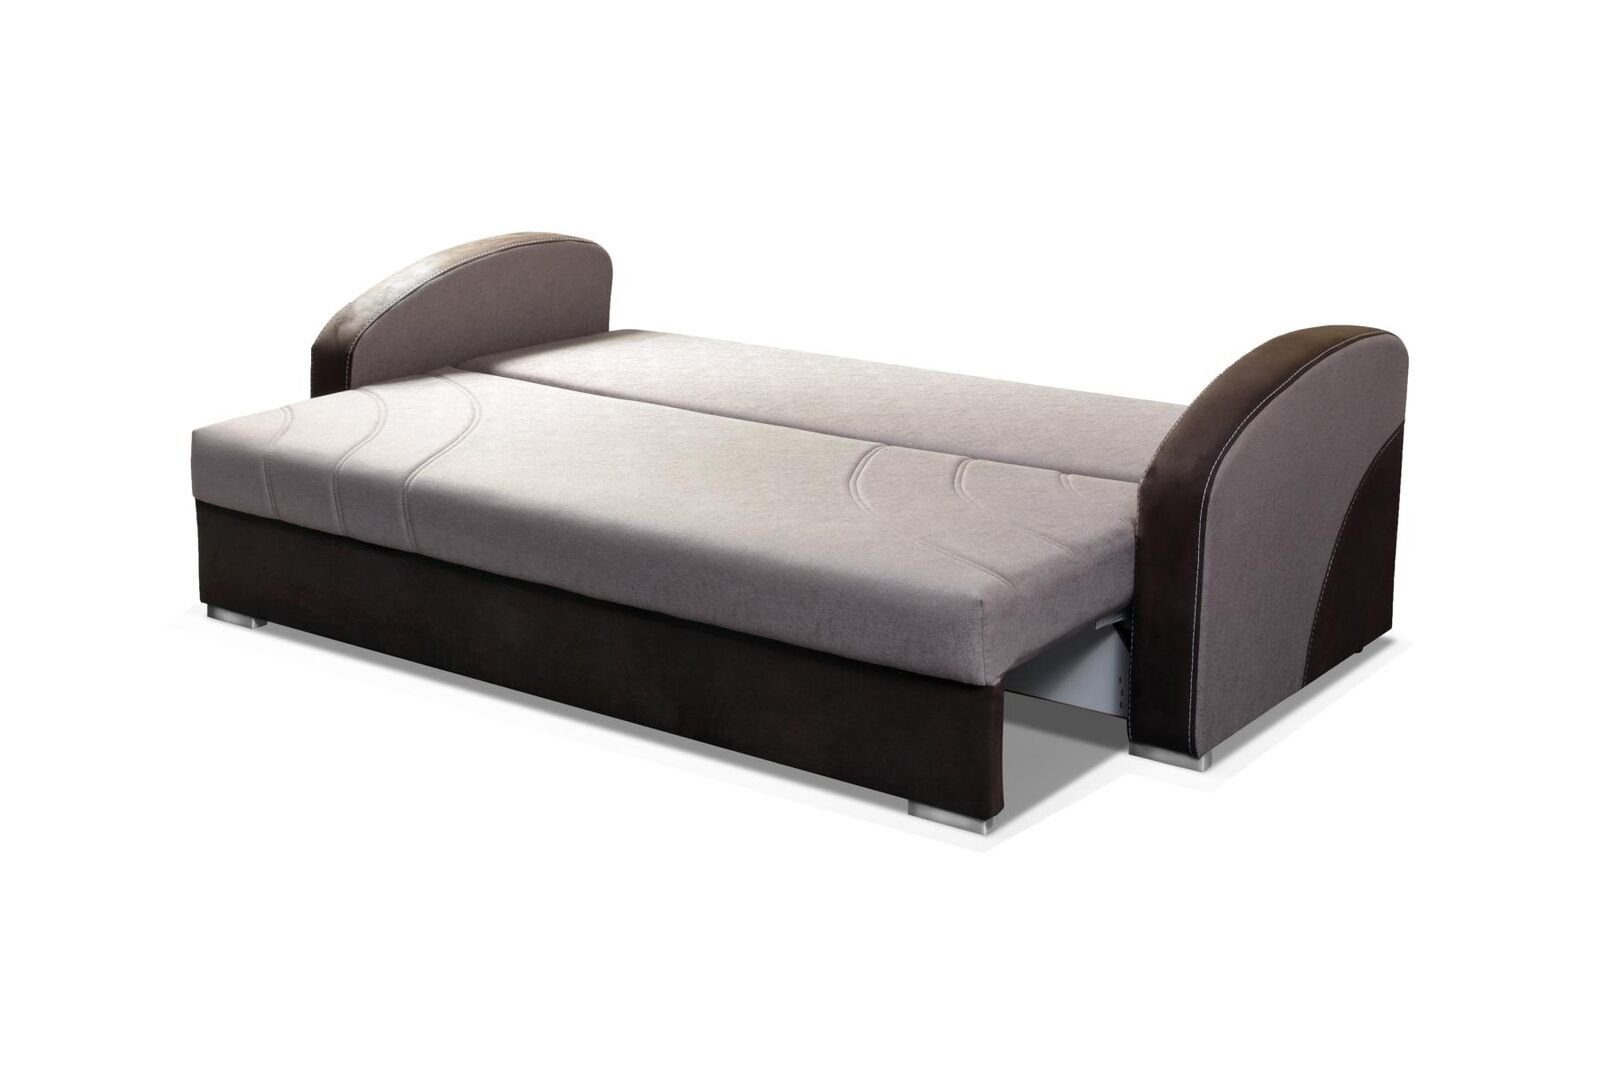 luxus Sofa Europe Bettfunktion Made JVmoebel in Neu, Moderner mit Dreisitzer Grauer